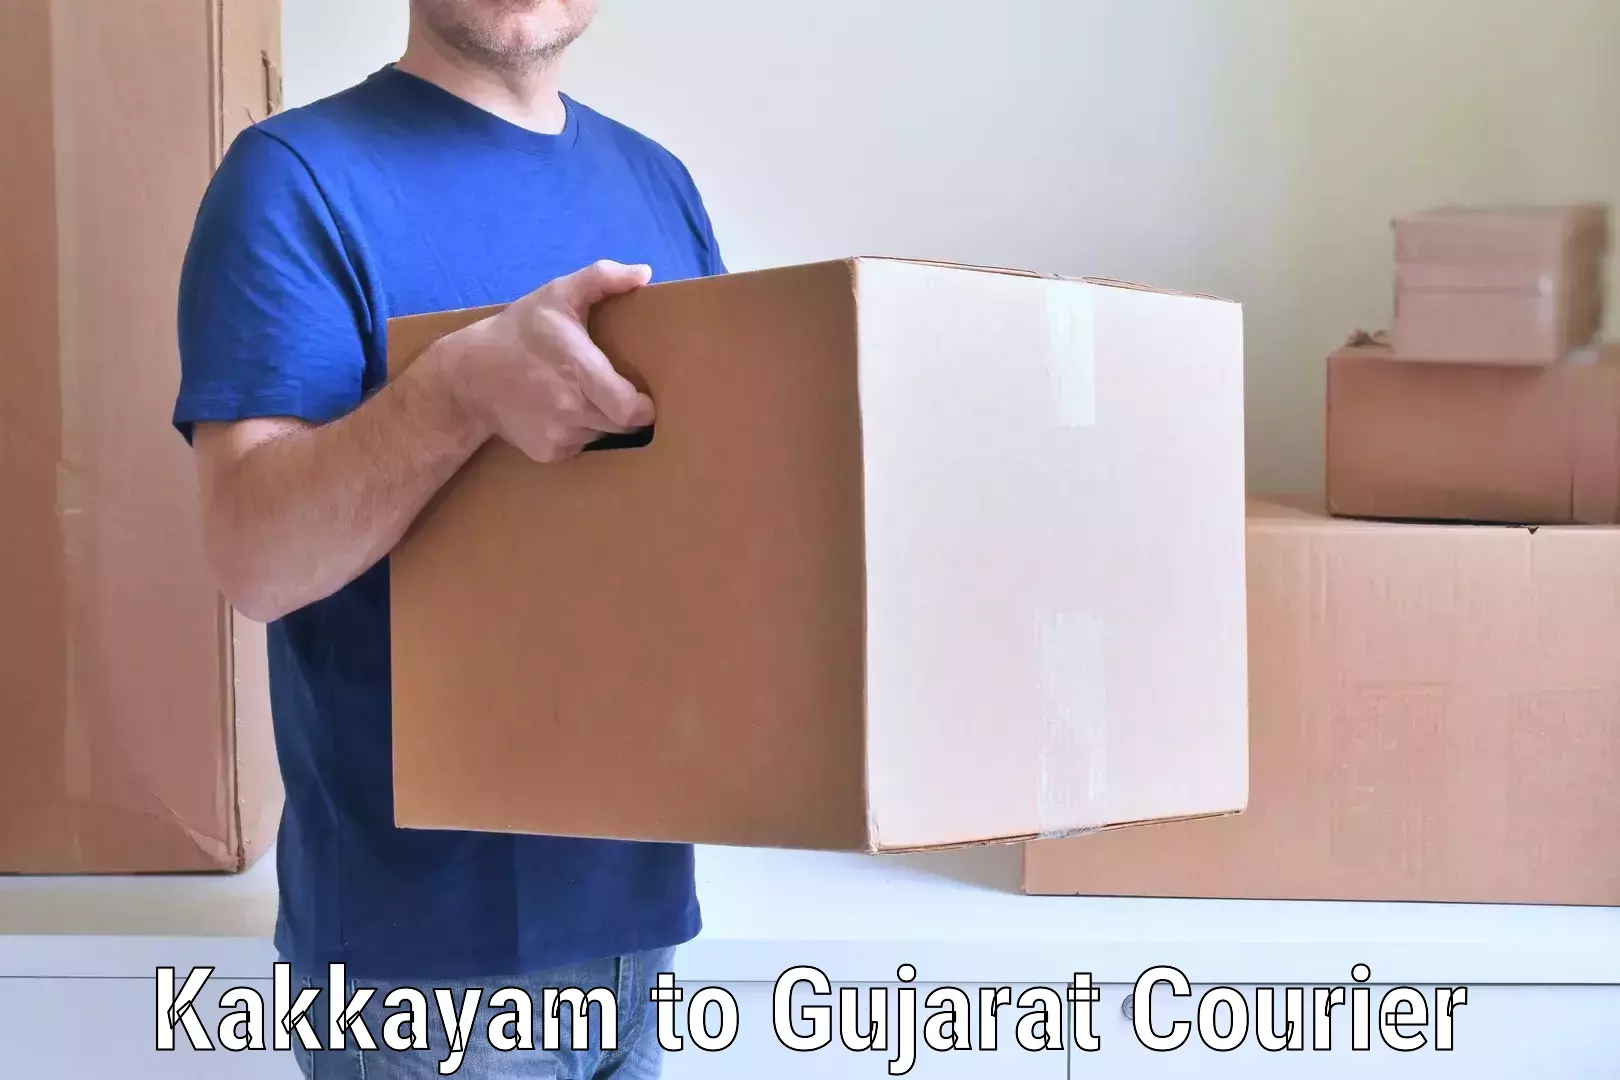 Efficient furniture transport Kakkayam to Gujarat